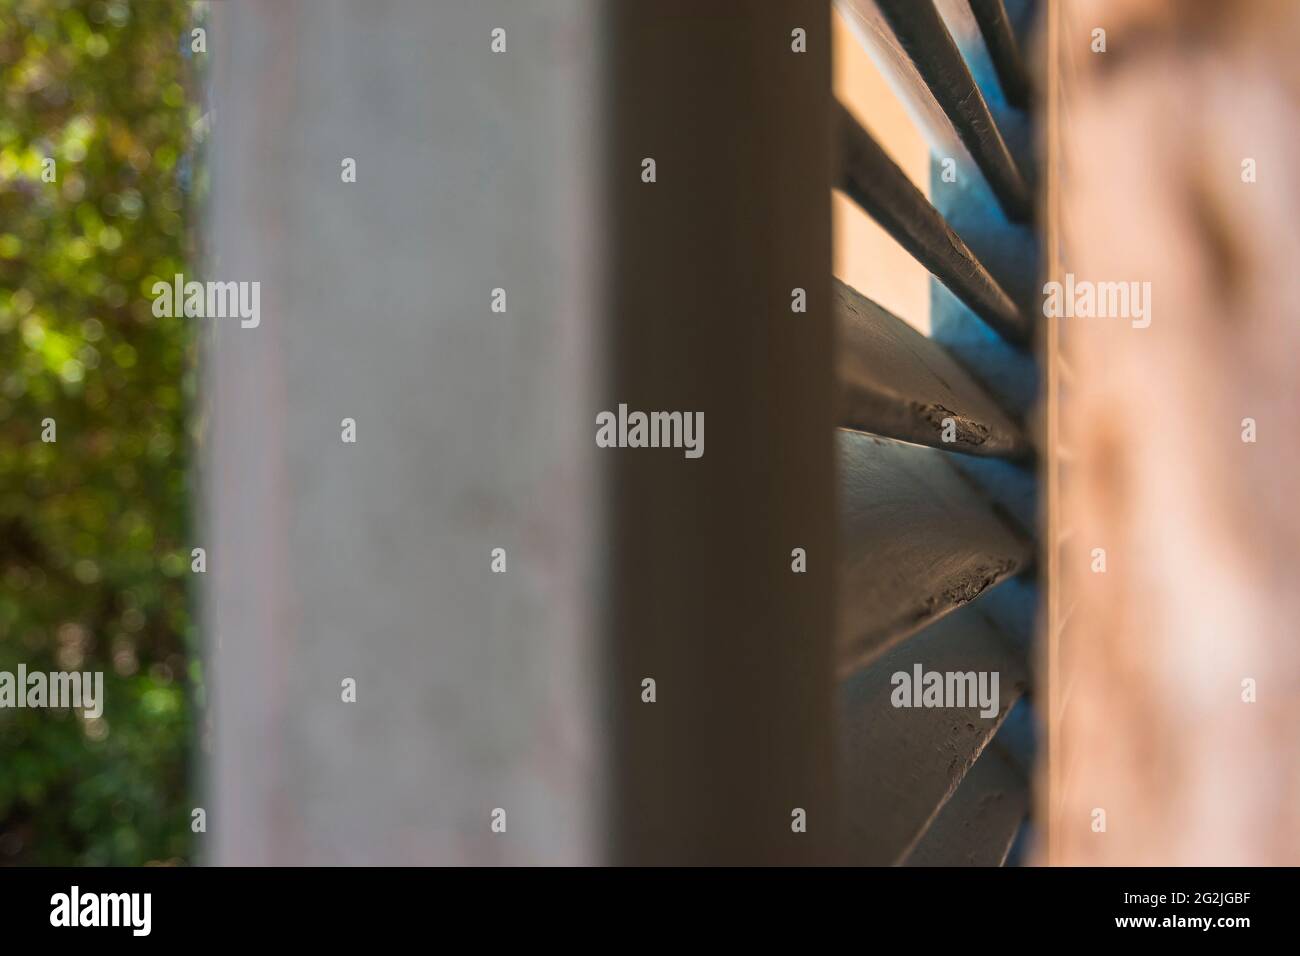 Vita still, umore estivo, dettaglio delle stecche di un otturatore, protezione solare Foto Stock